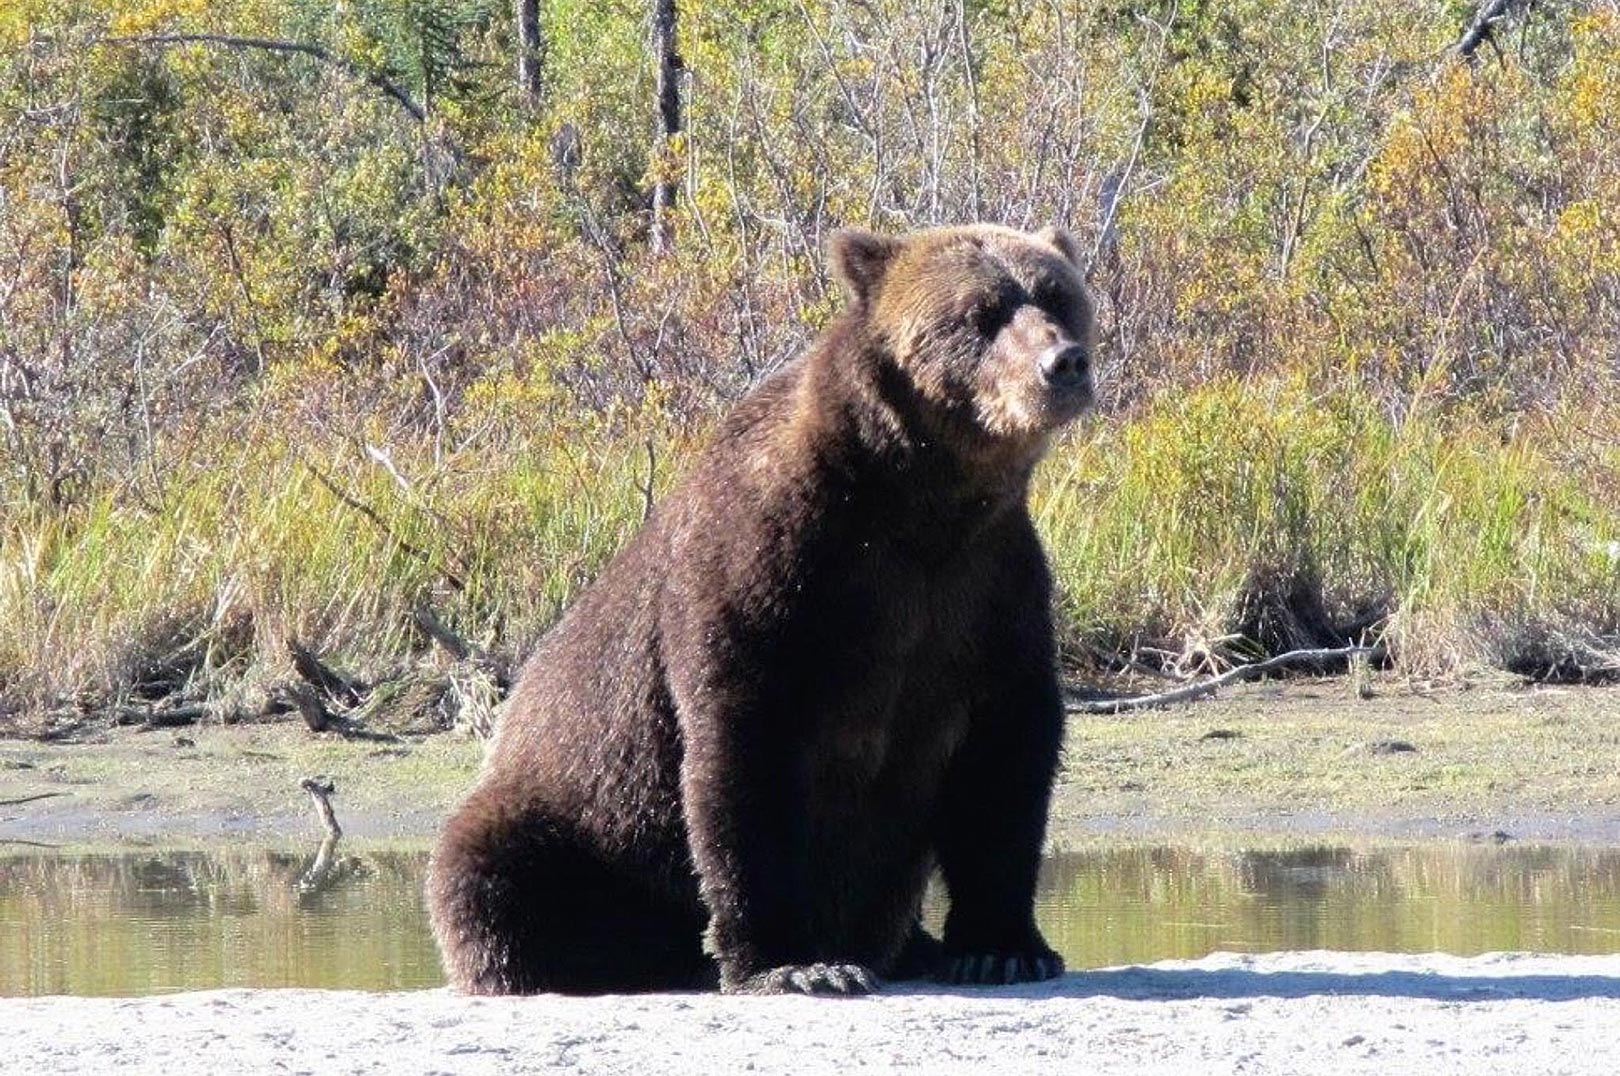 Velvoksne grizzlybjørne som denne er der næsten garanti for at se de fleste steder i Alaska.